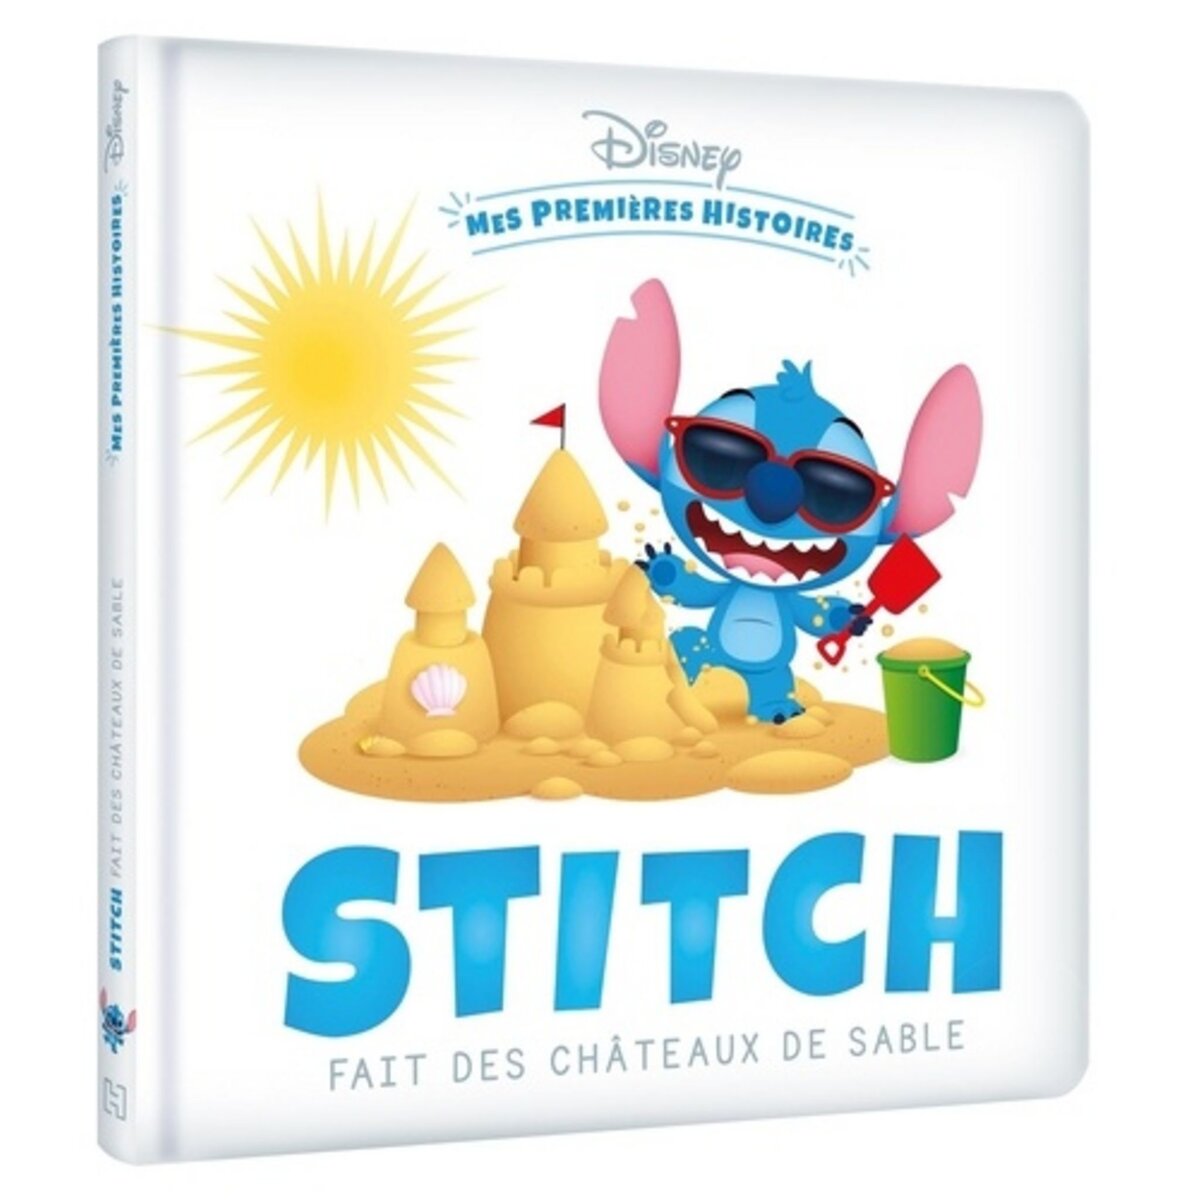  STITCH FAIT DES CHATEAUX DE SABLE, Disney